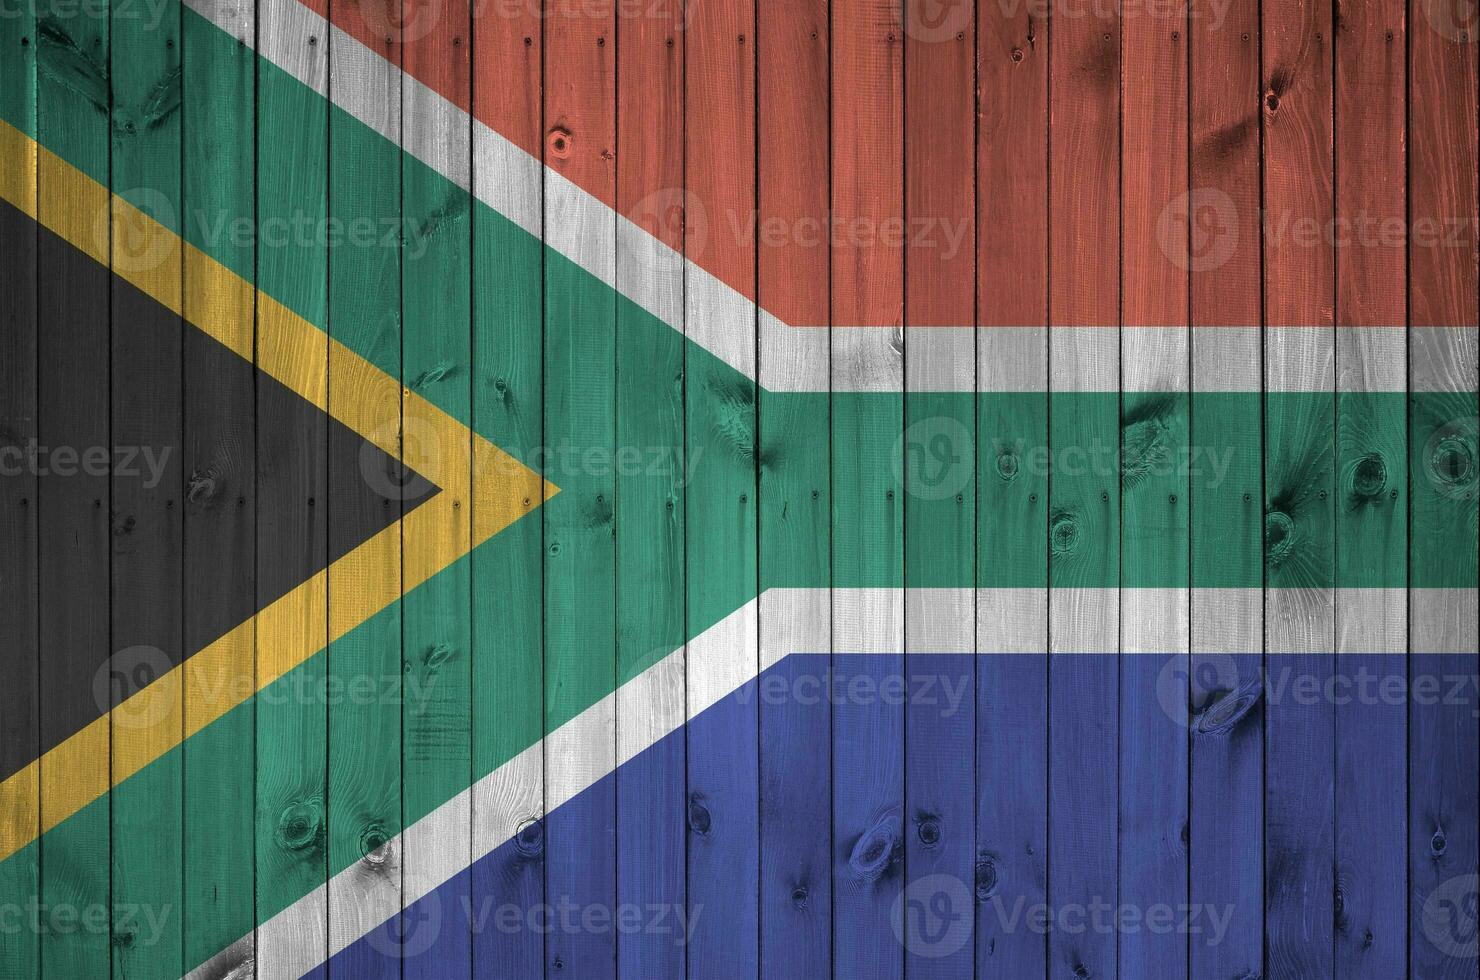 söder afrika flagga avbildad i ljus måla färger på gammal trä- vägg. texturerad baner på grov bakgrund foto